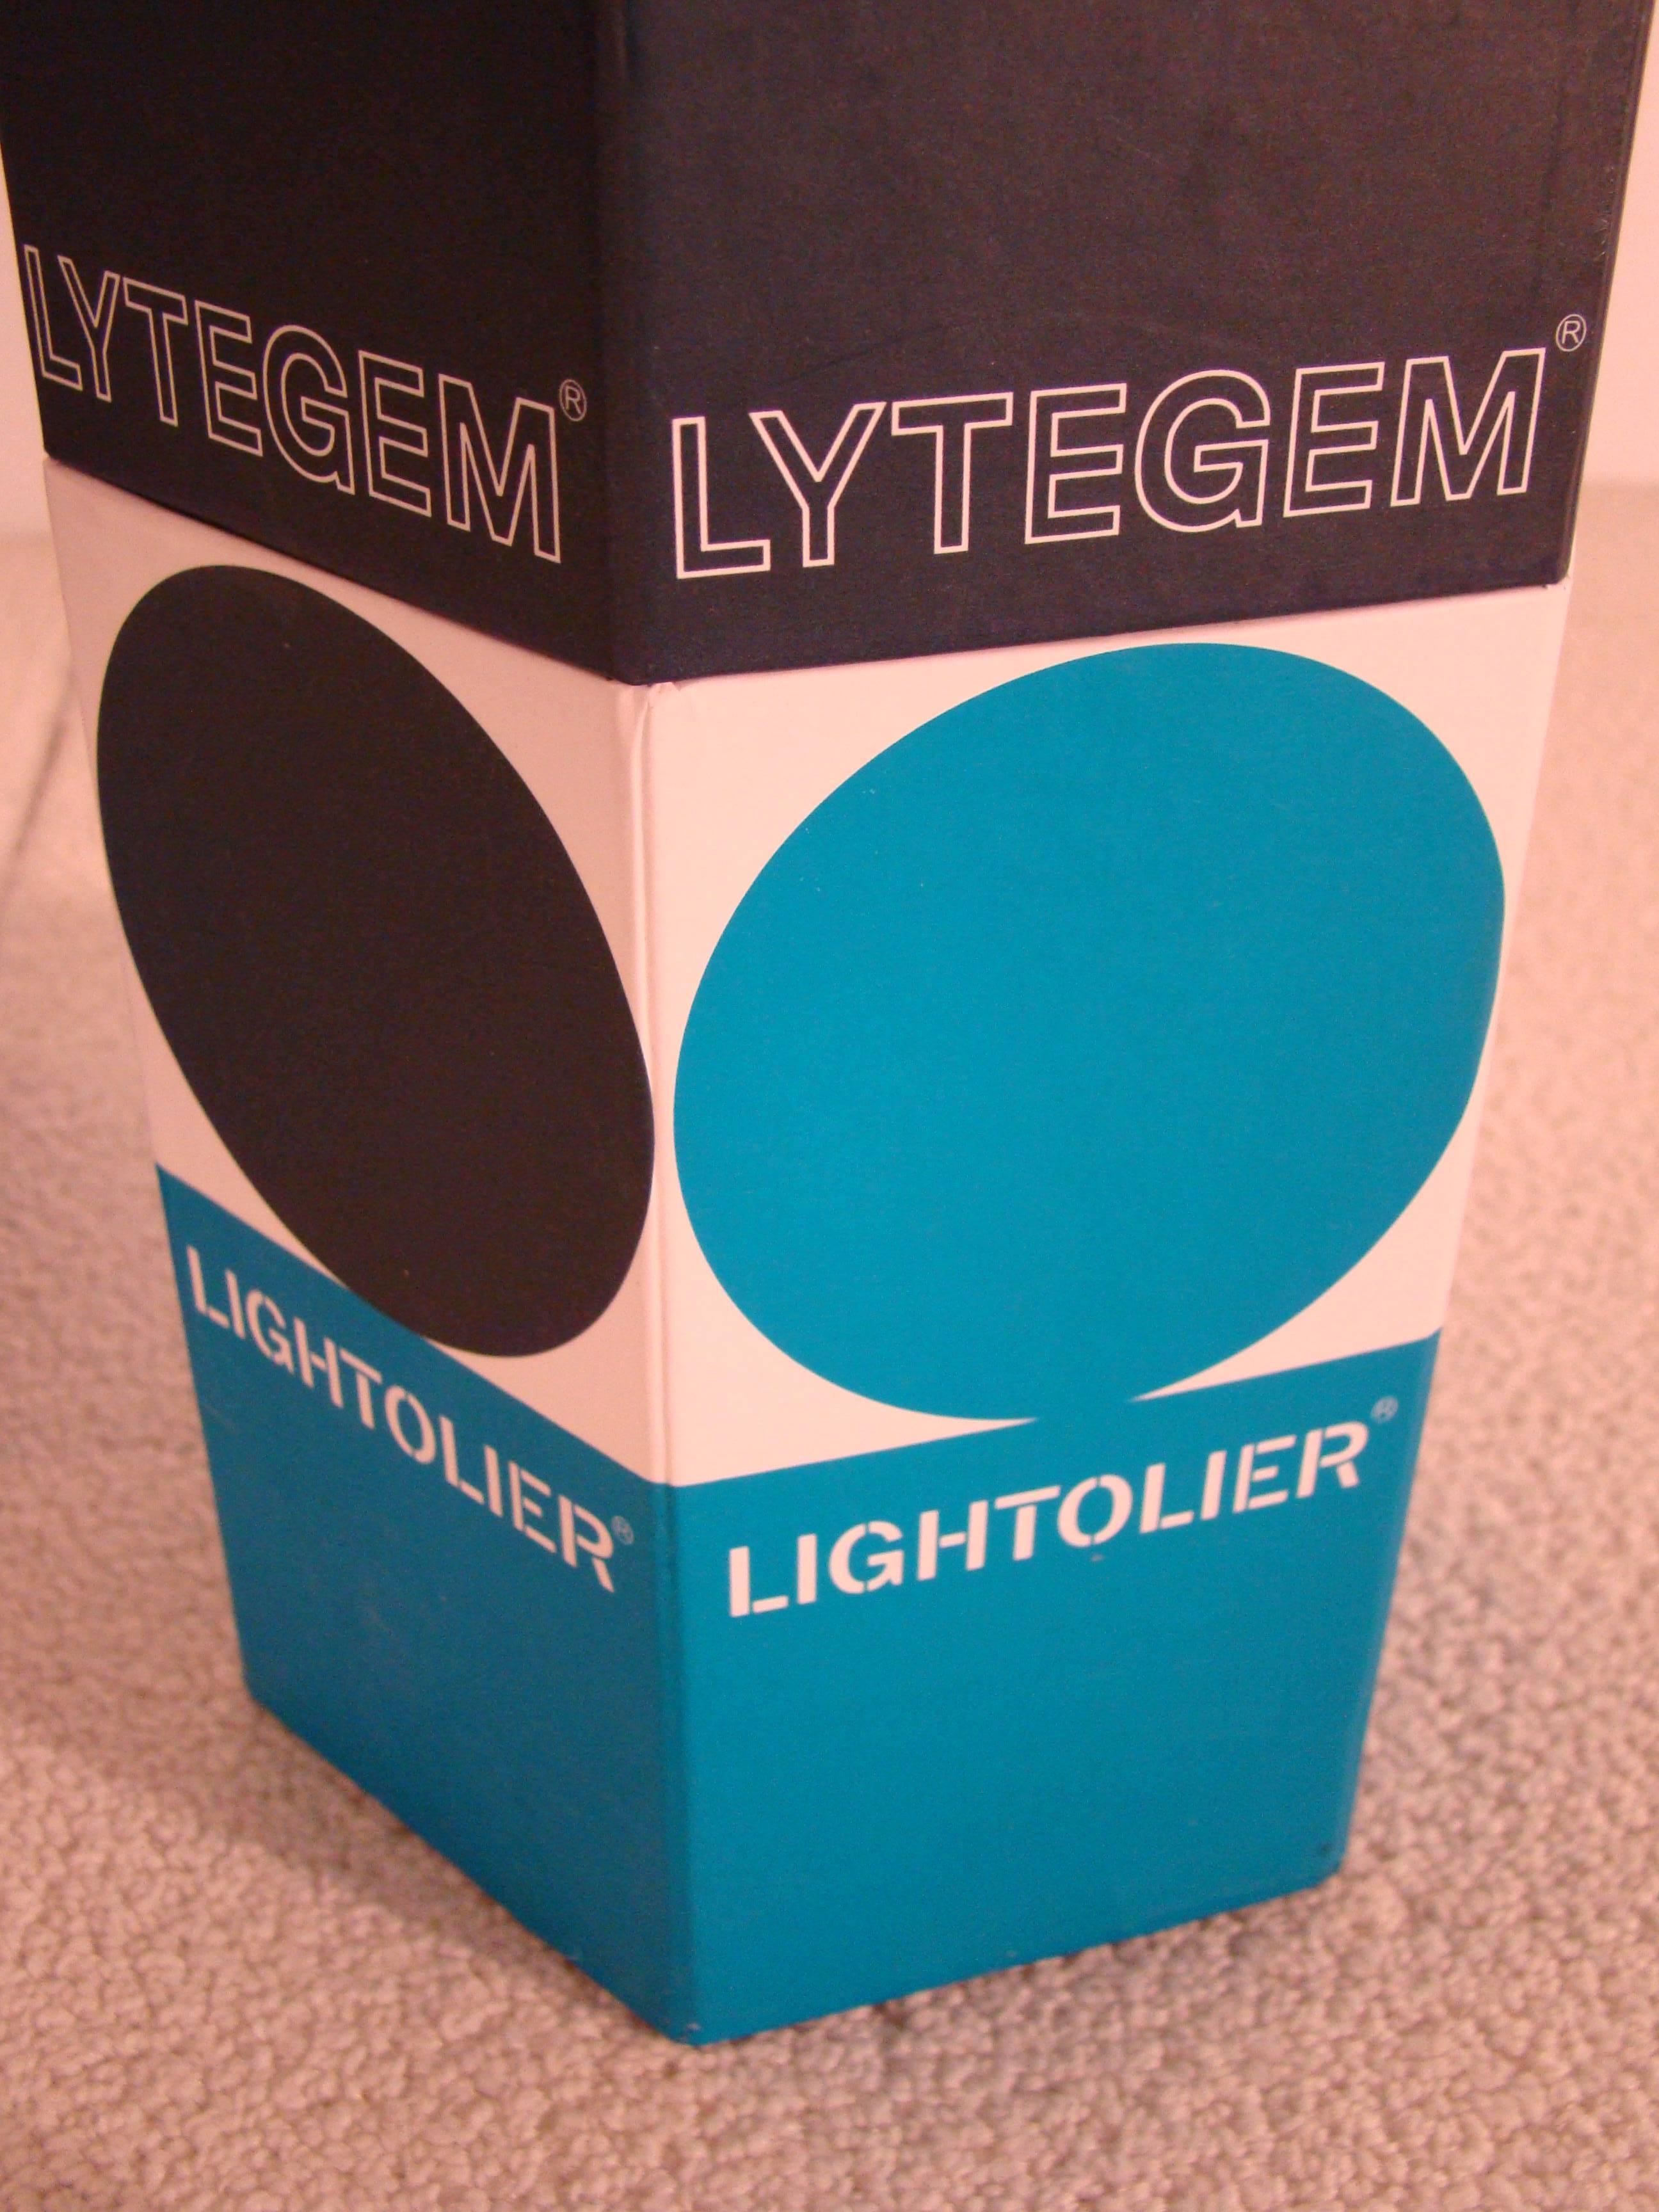 Michael Lax Lytegem Lightolie, Pair of Telescopic Eyeball Tasks Lamps in Box For Sale 2